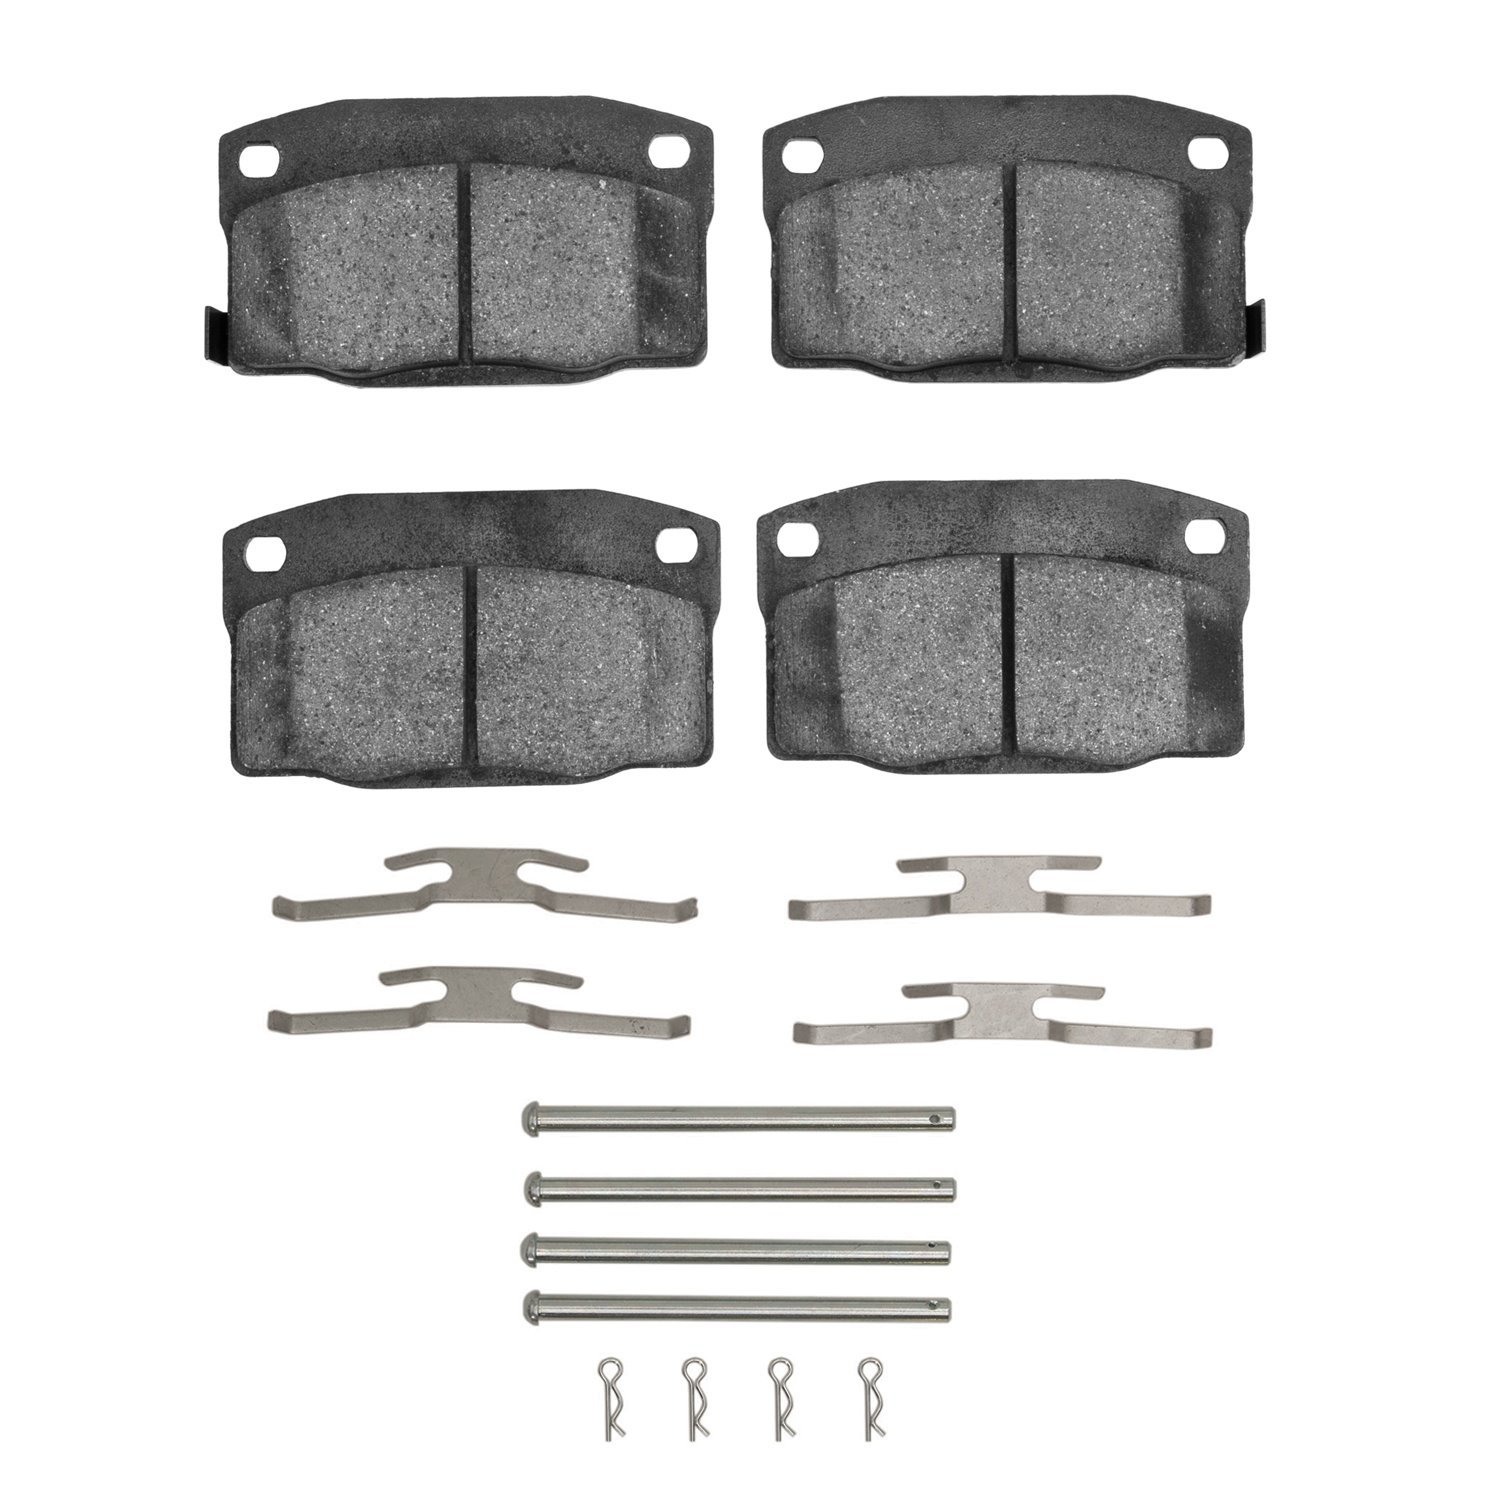 1311-0378-01 3000-Series Semi-Metallic Brake Pads & Hardware Kit, 1988-1993 GM, Position: Front